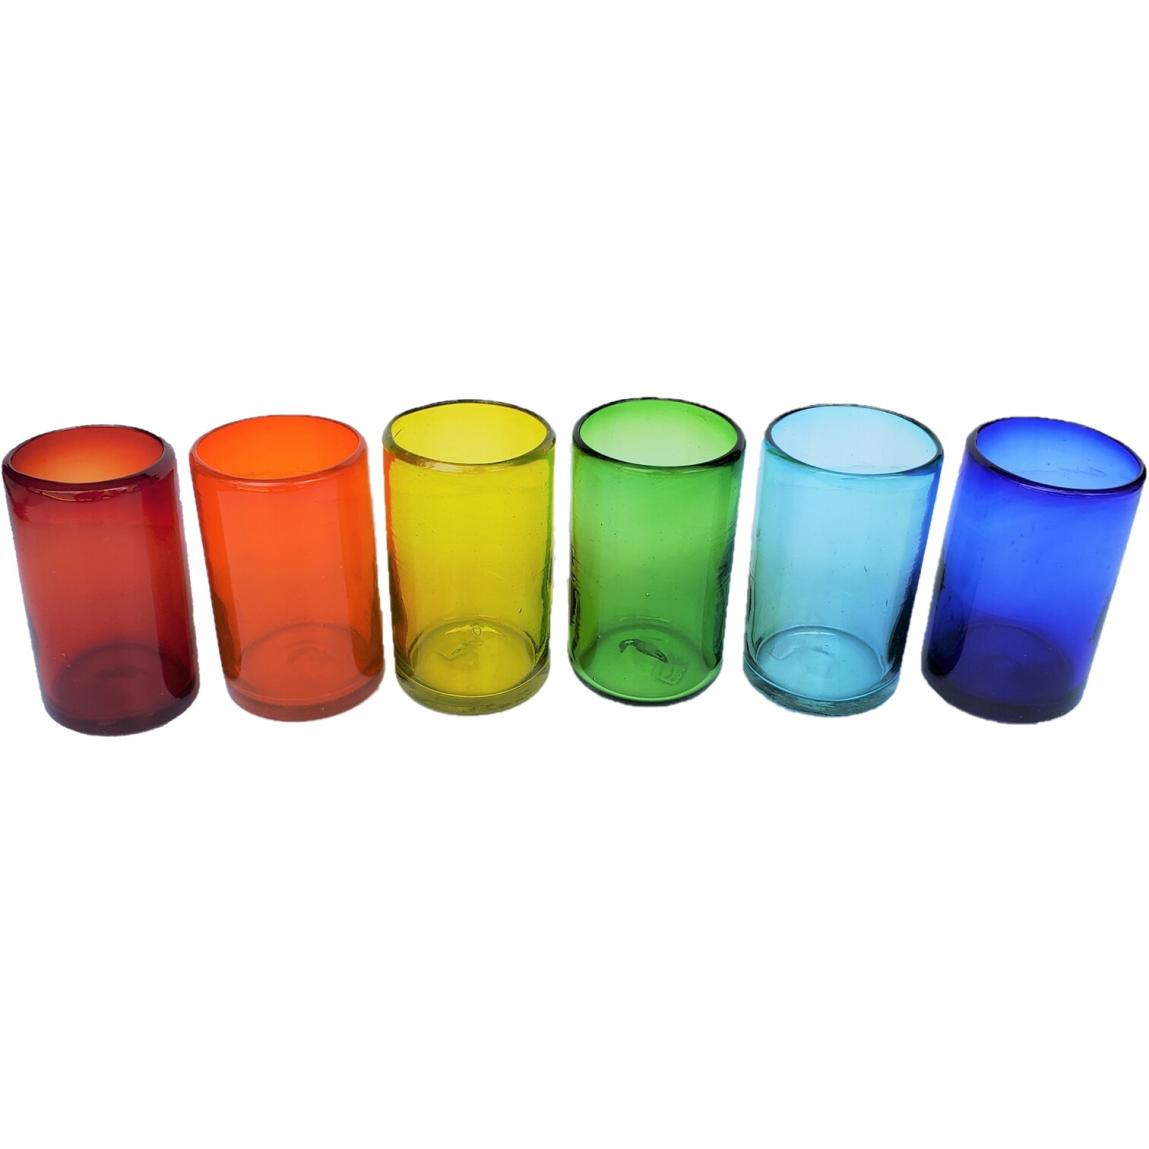 Novedades / Juego de 6 vasos grandes de colores Arcoris / stos artesanales vasos le darn un toque clsico a su bebida favorita.